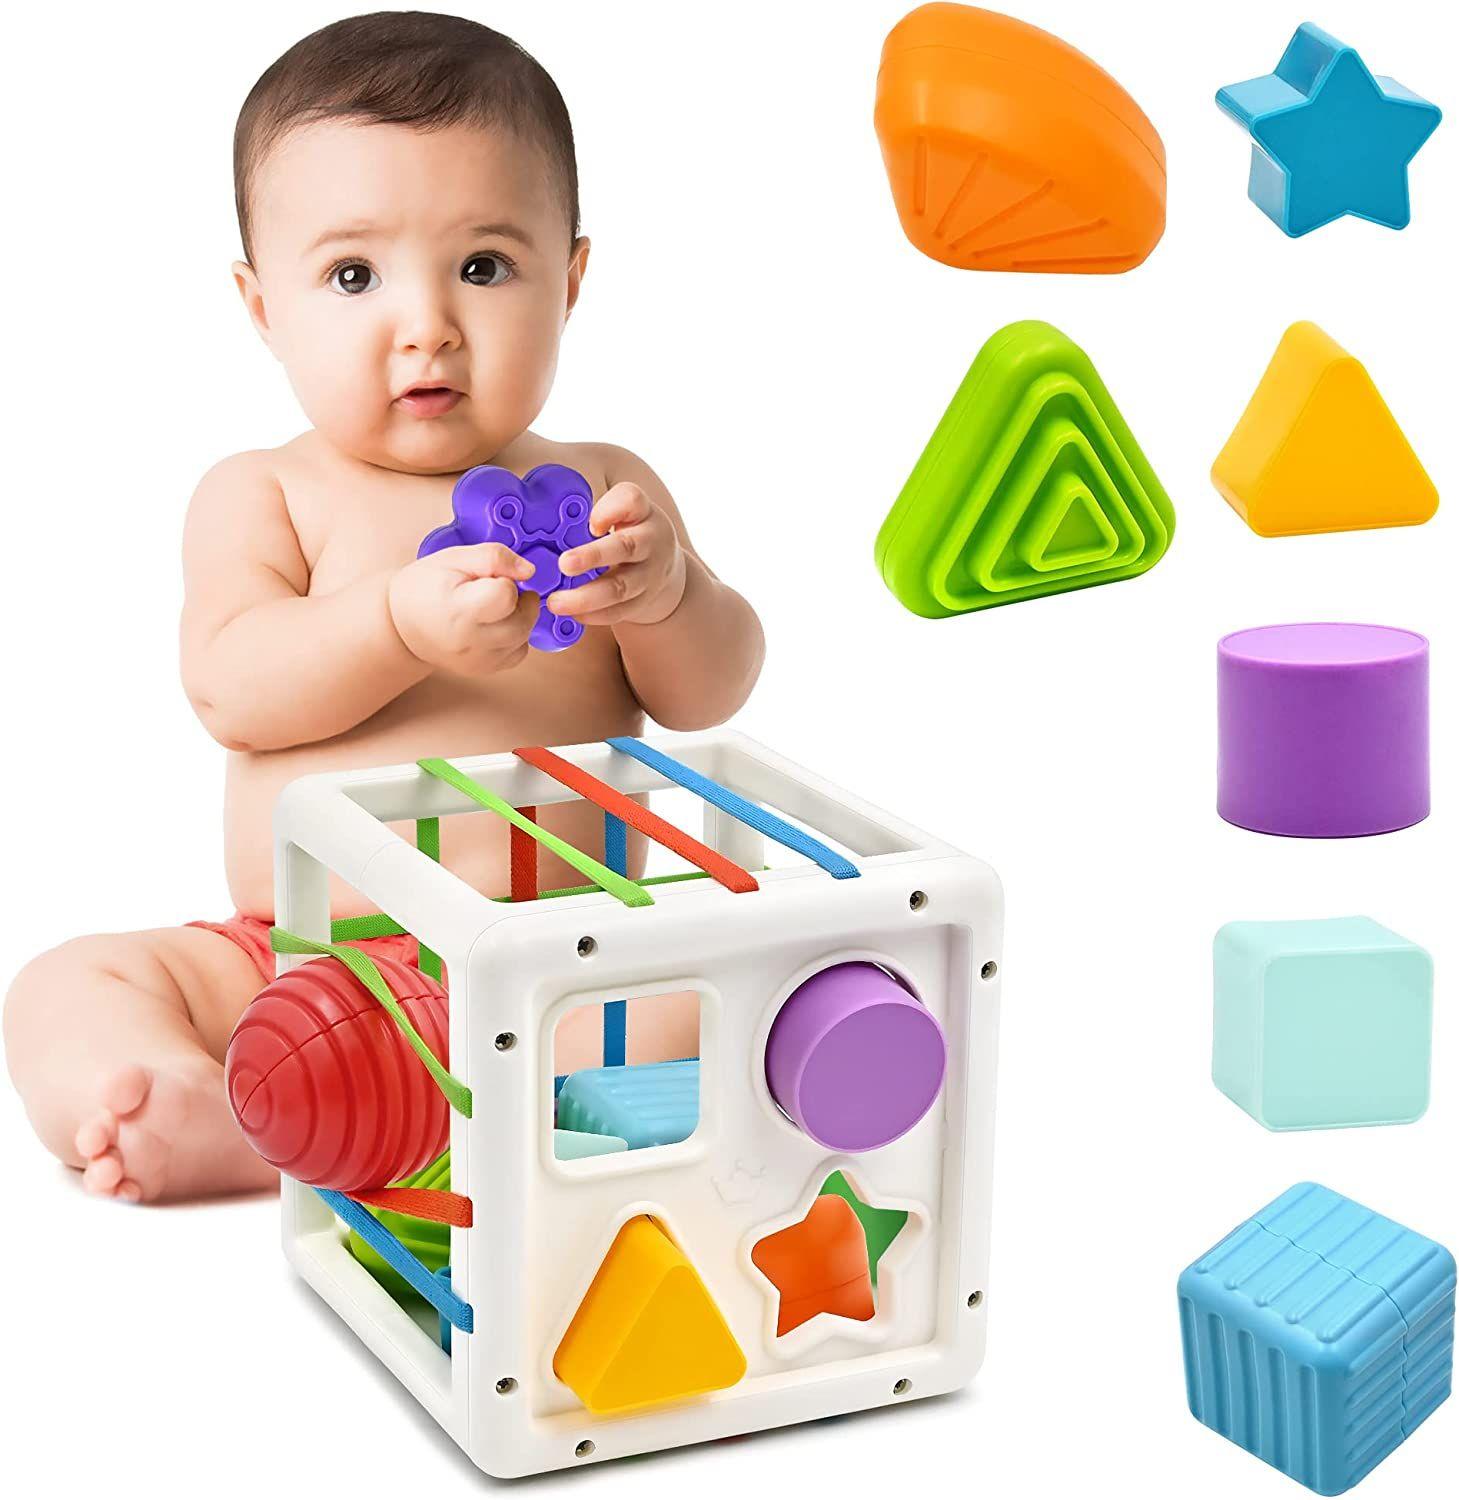 Jouet Bebe Montessori 1 2 Ans, Jouet Enfant en Forme de Cube pour